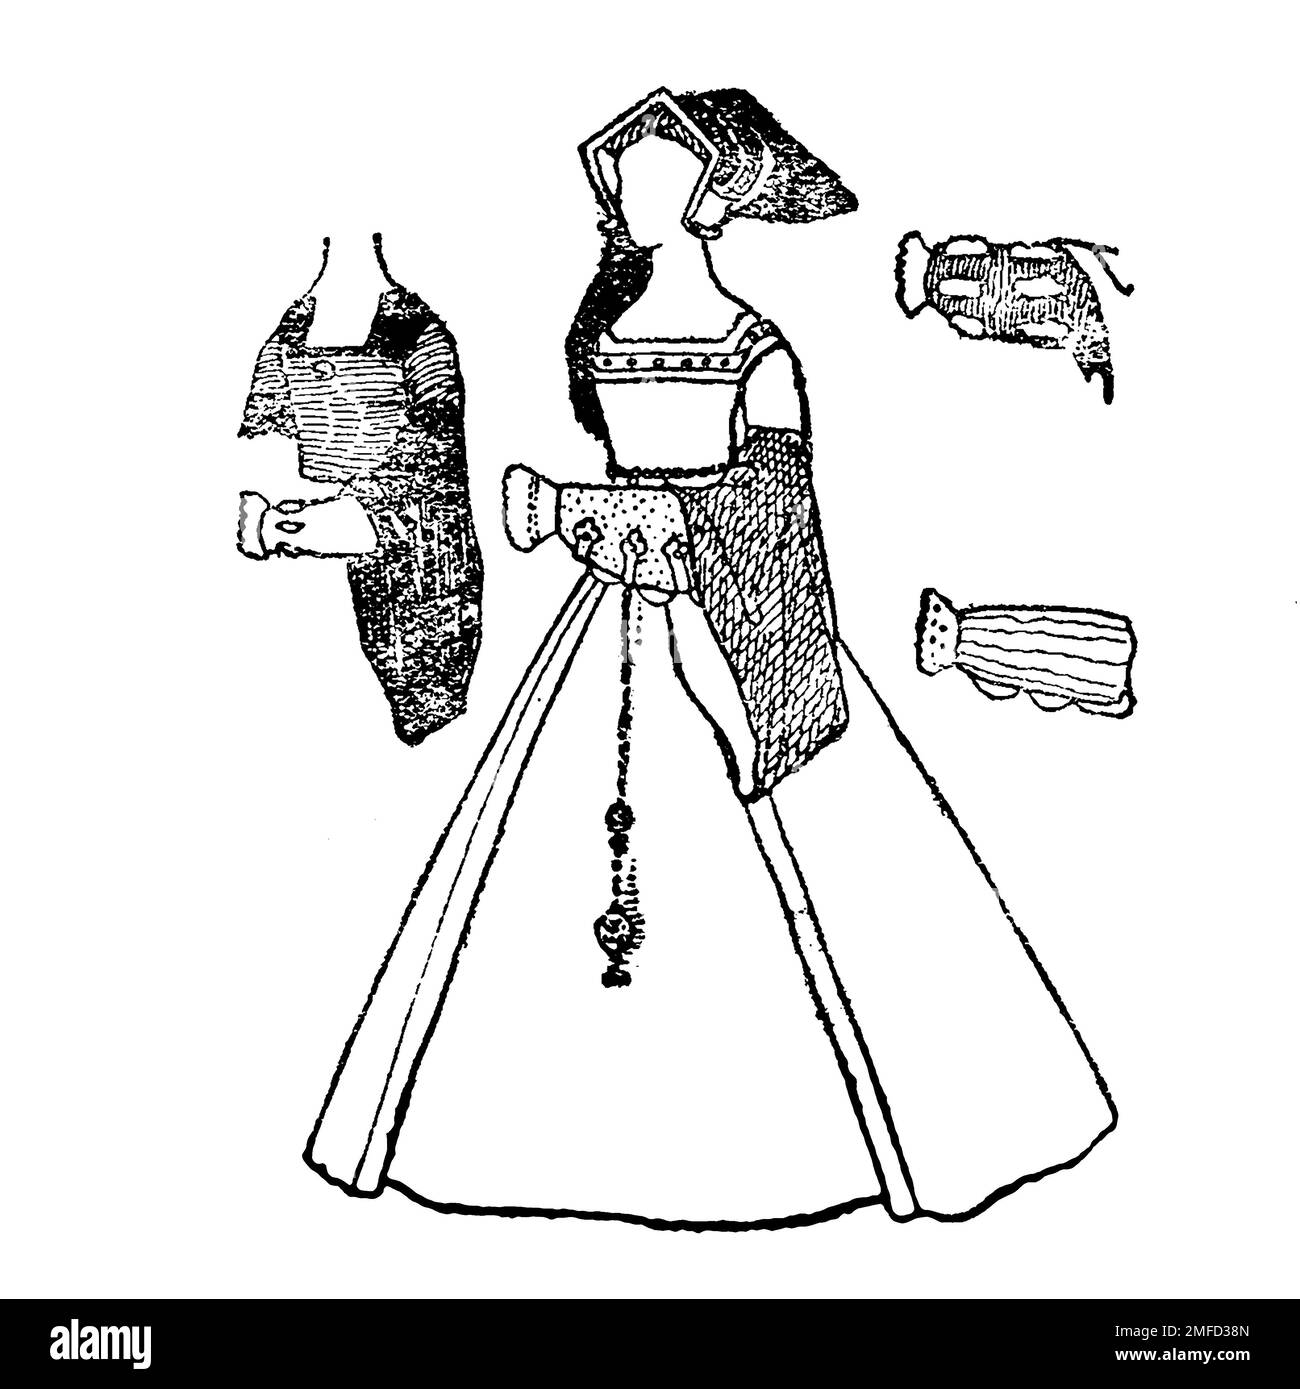 Strichzeichnung des Frauenkleides während der Herrschaft Heinrich VIII aus dem Buch " English Costume " von Dion Clayton Calthrop, 1878-1937 Publikationsdatum 1907 Publisher London, A. & C. Black Stockfoto